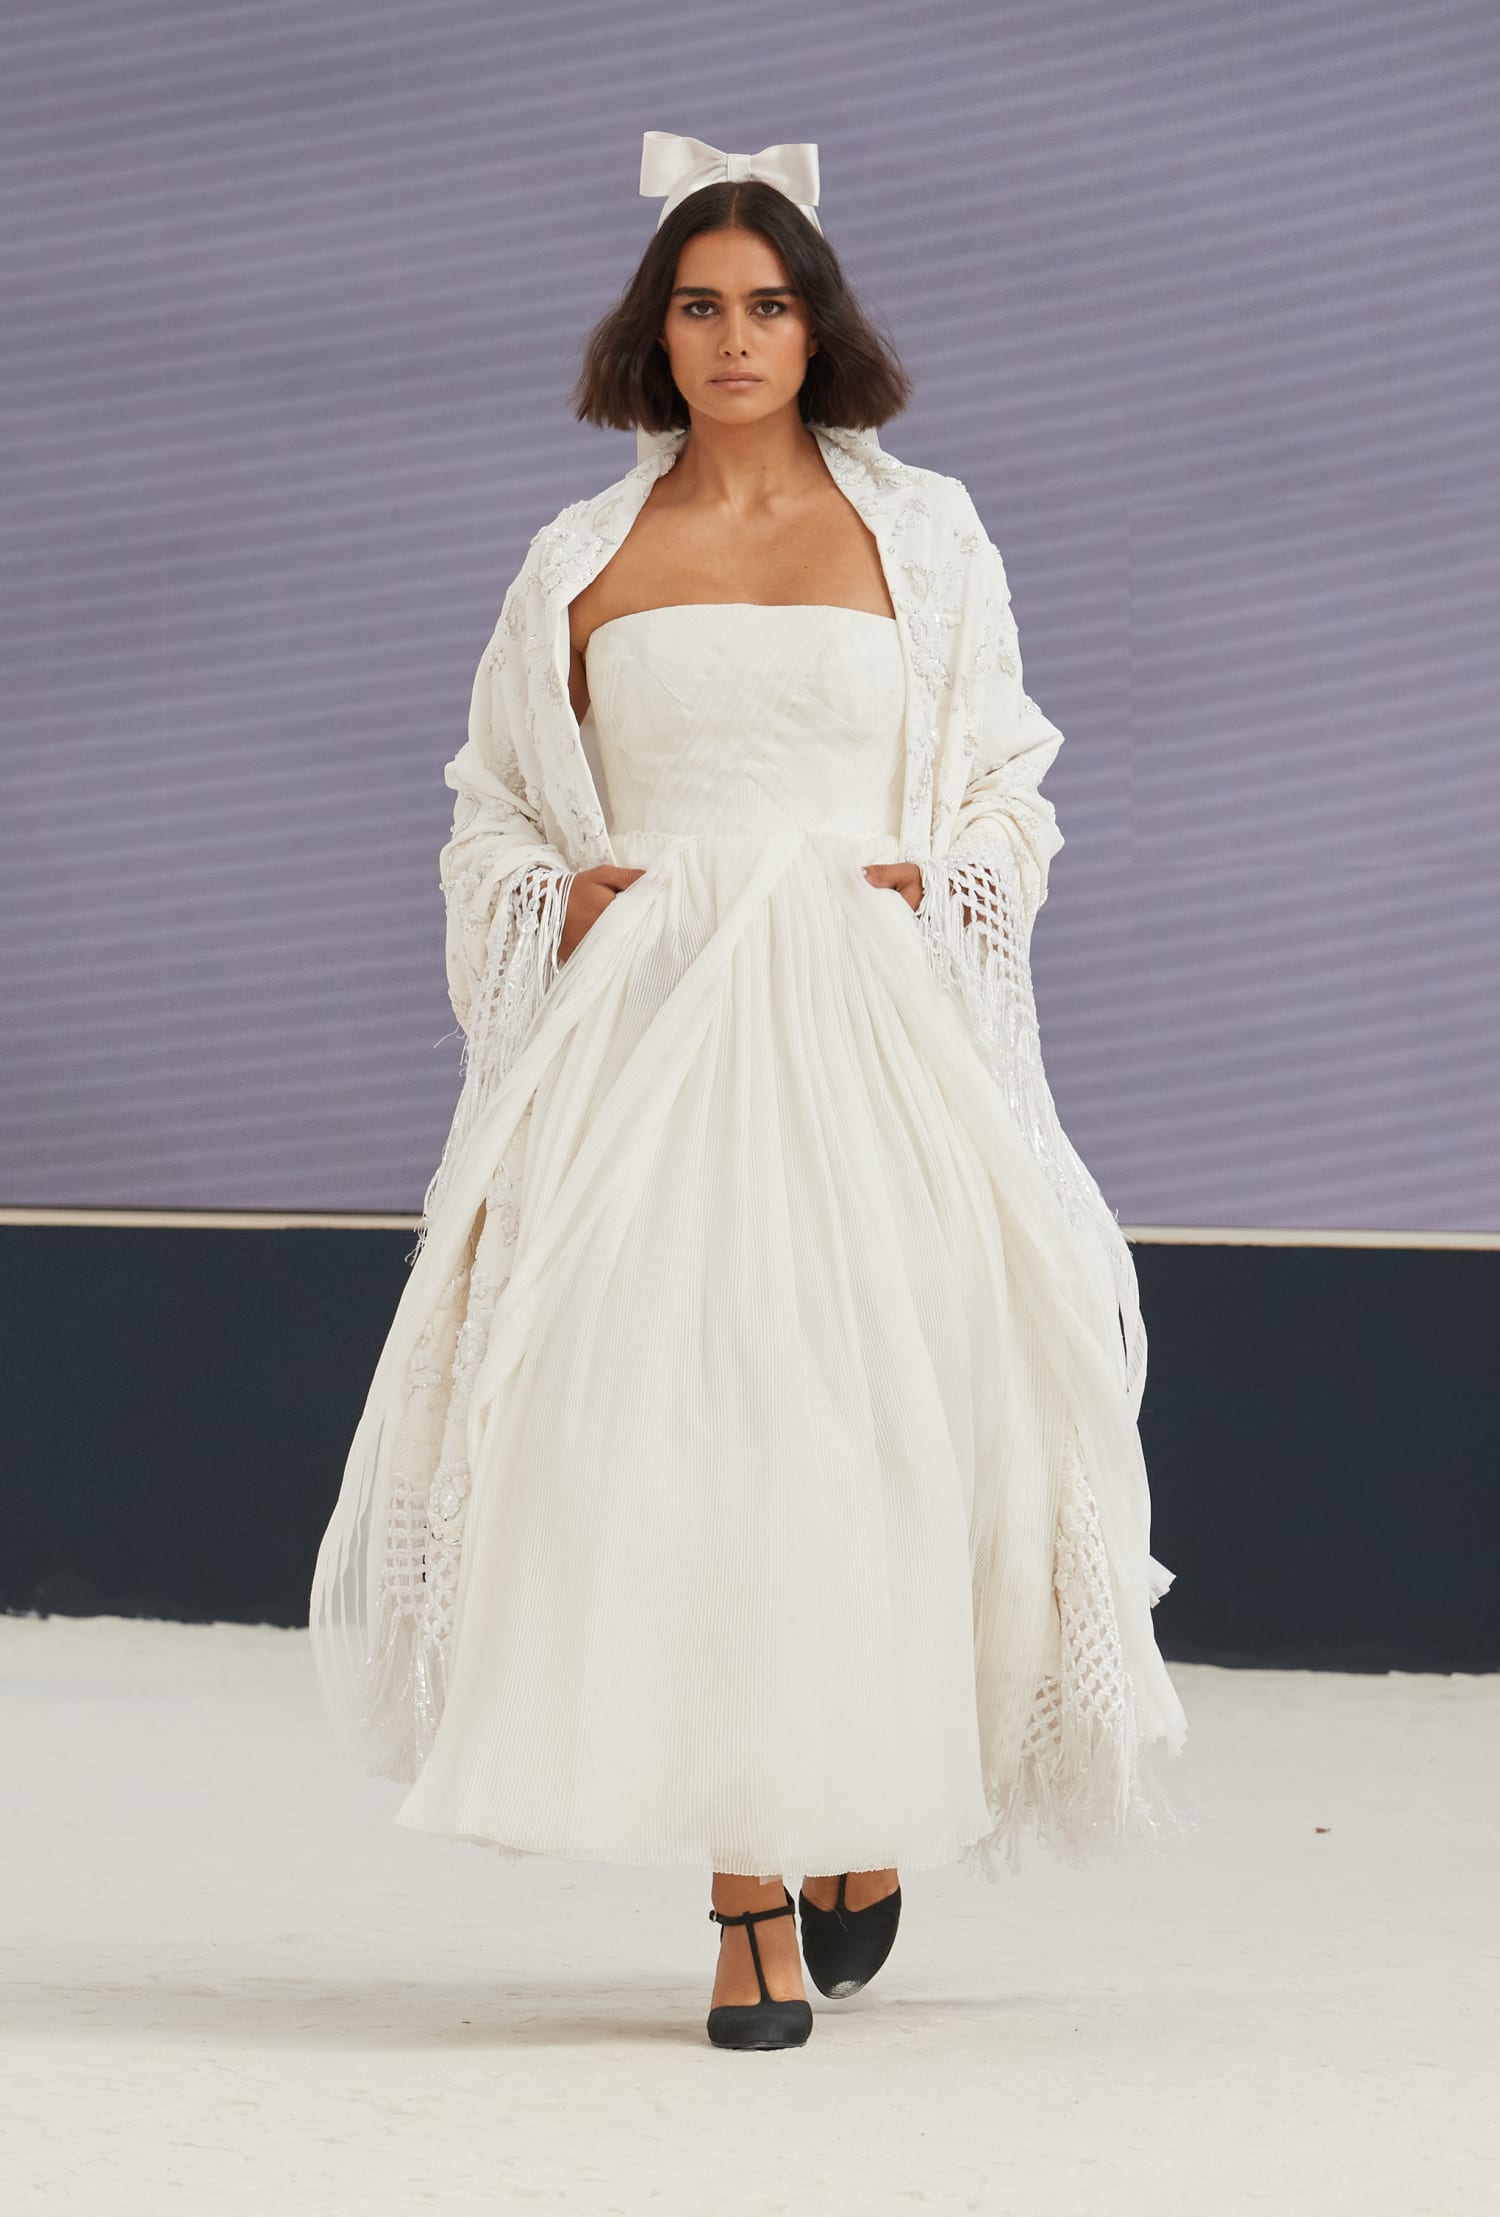 chanel white dress